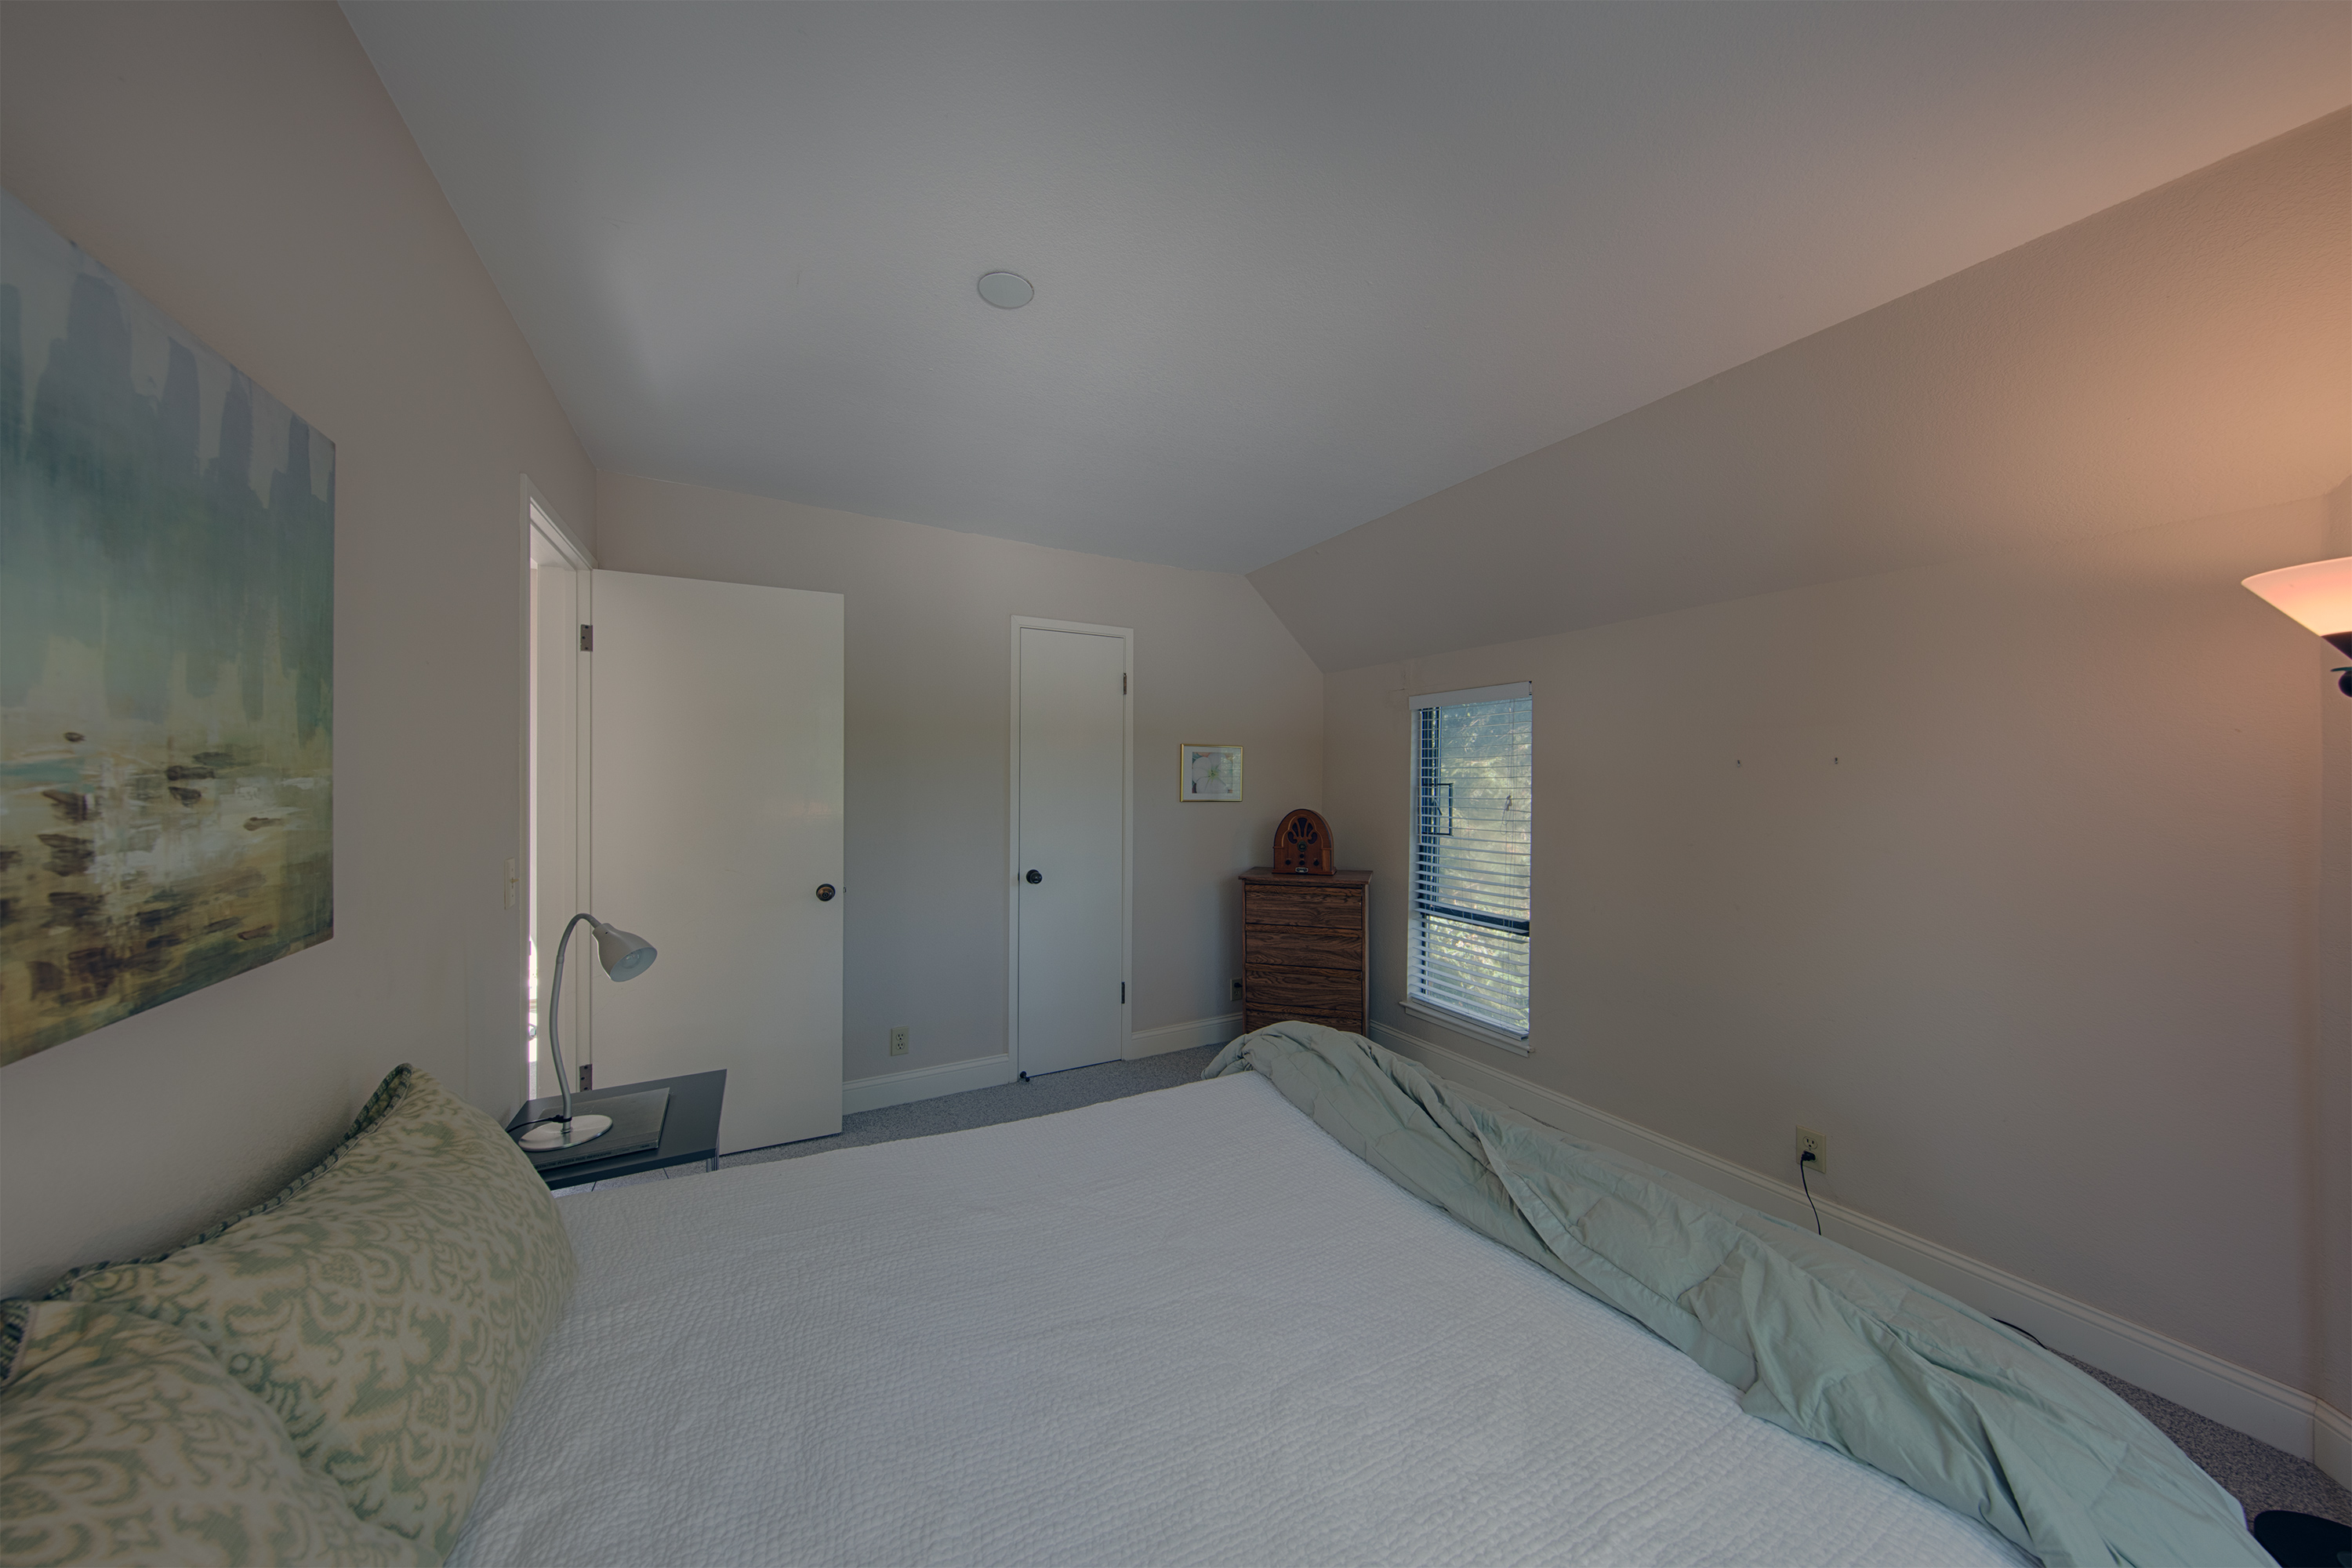 229 High St, Palo Alto 94301 - Guest Suite Bed1 (B)